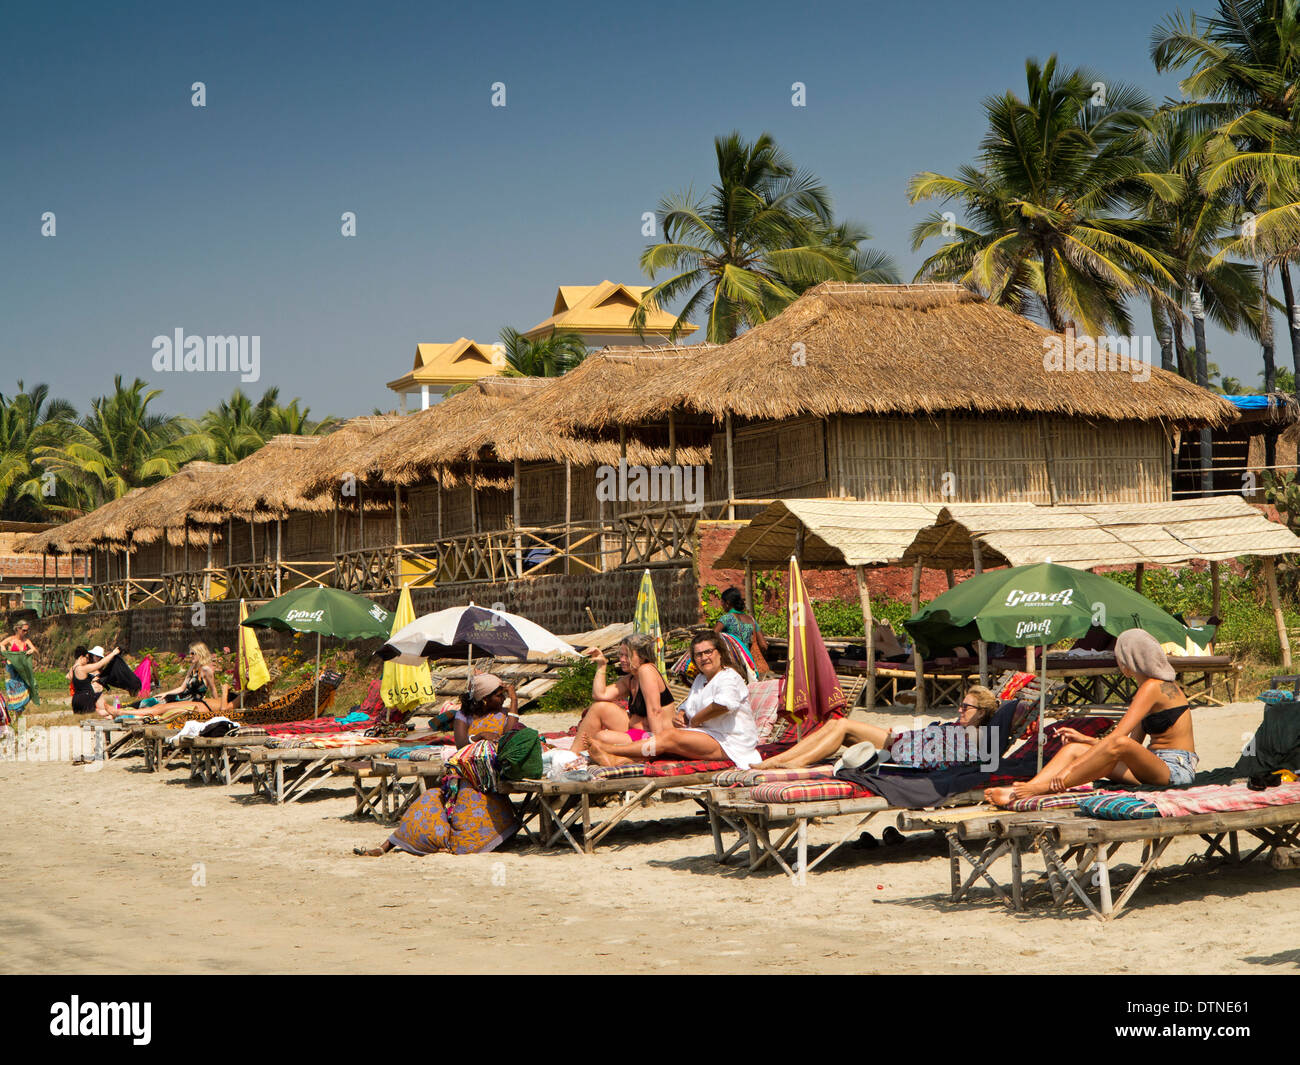 India, Goa, Mandrem beach, tourists sunbathing on sunloungers Stock Photo